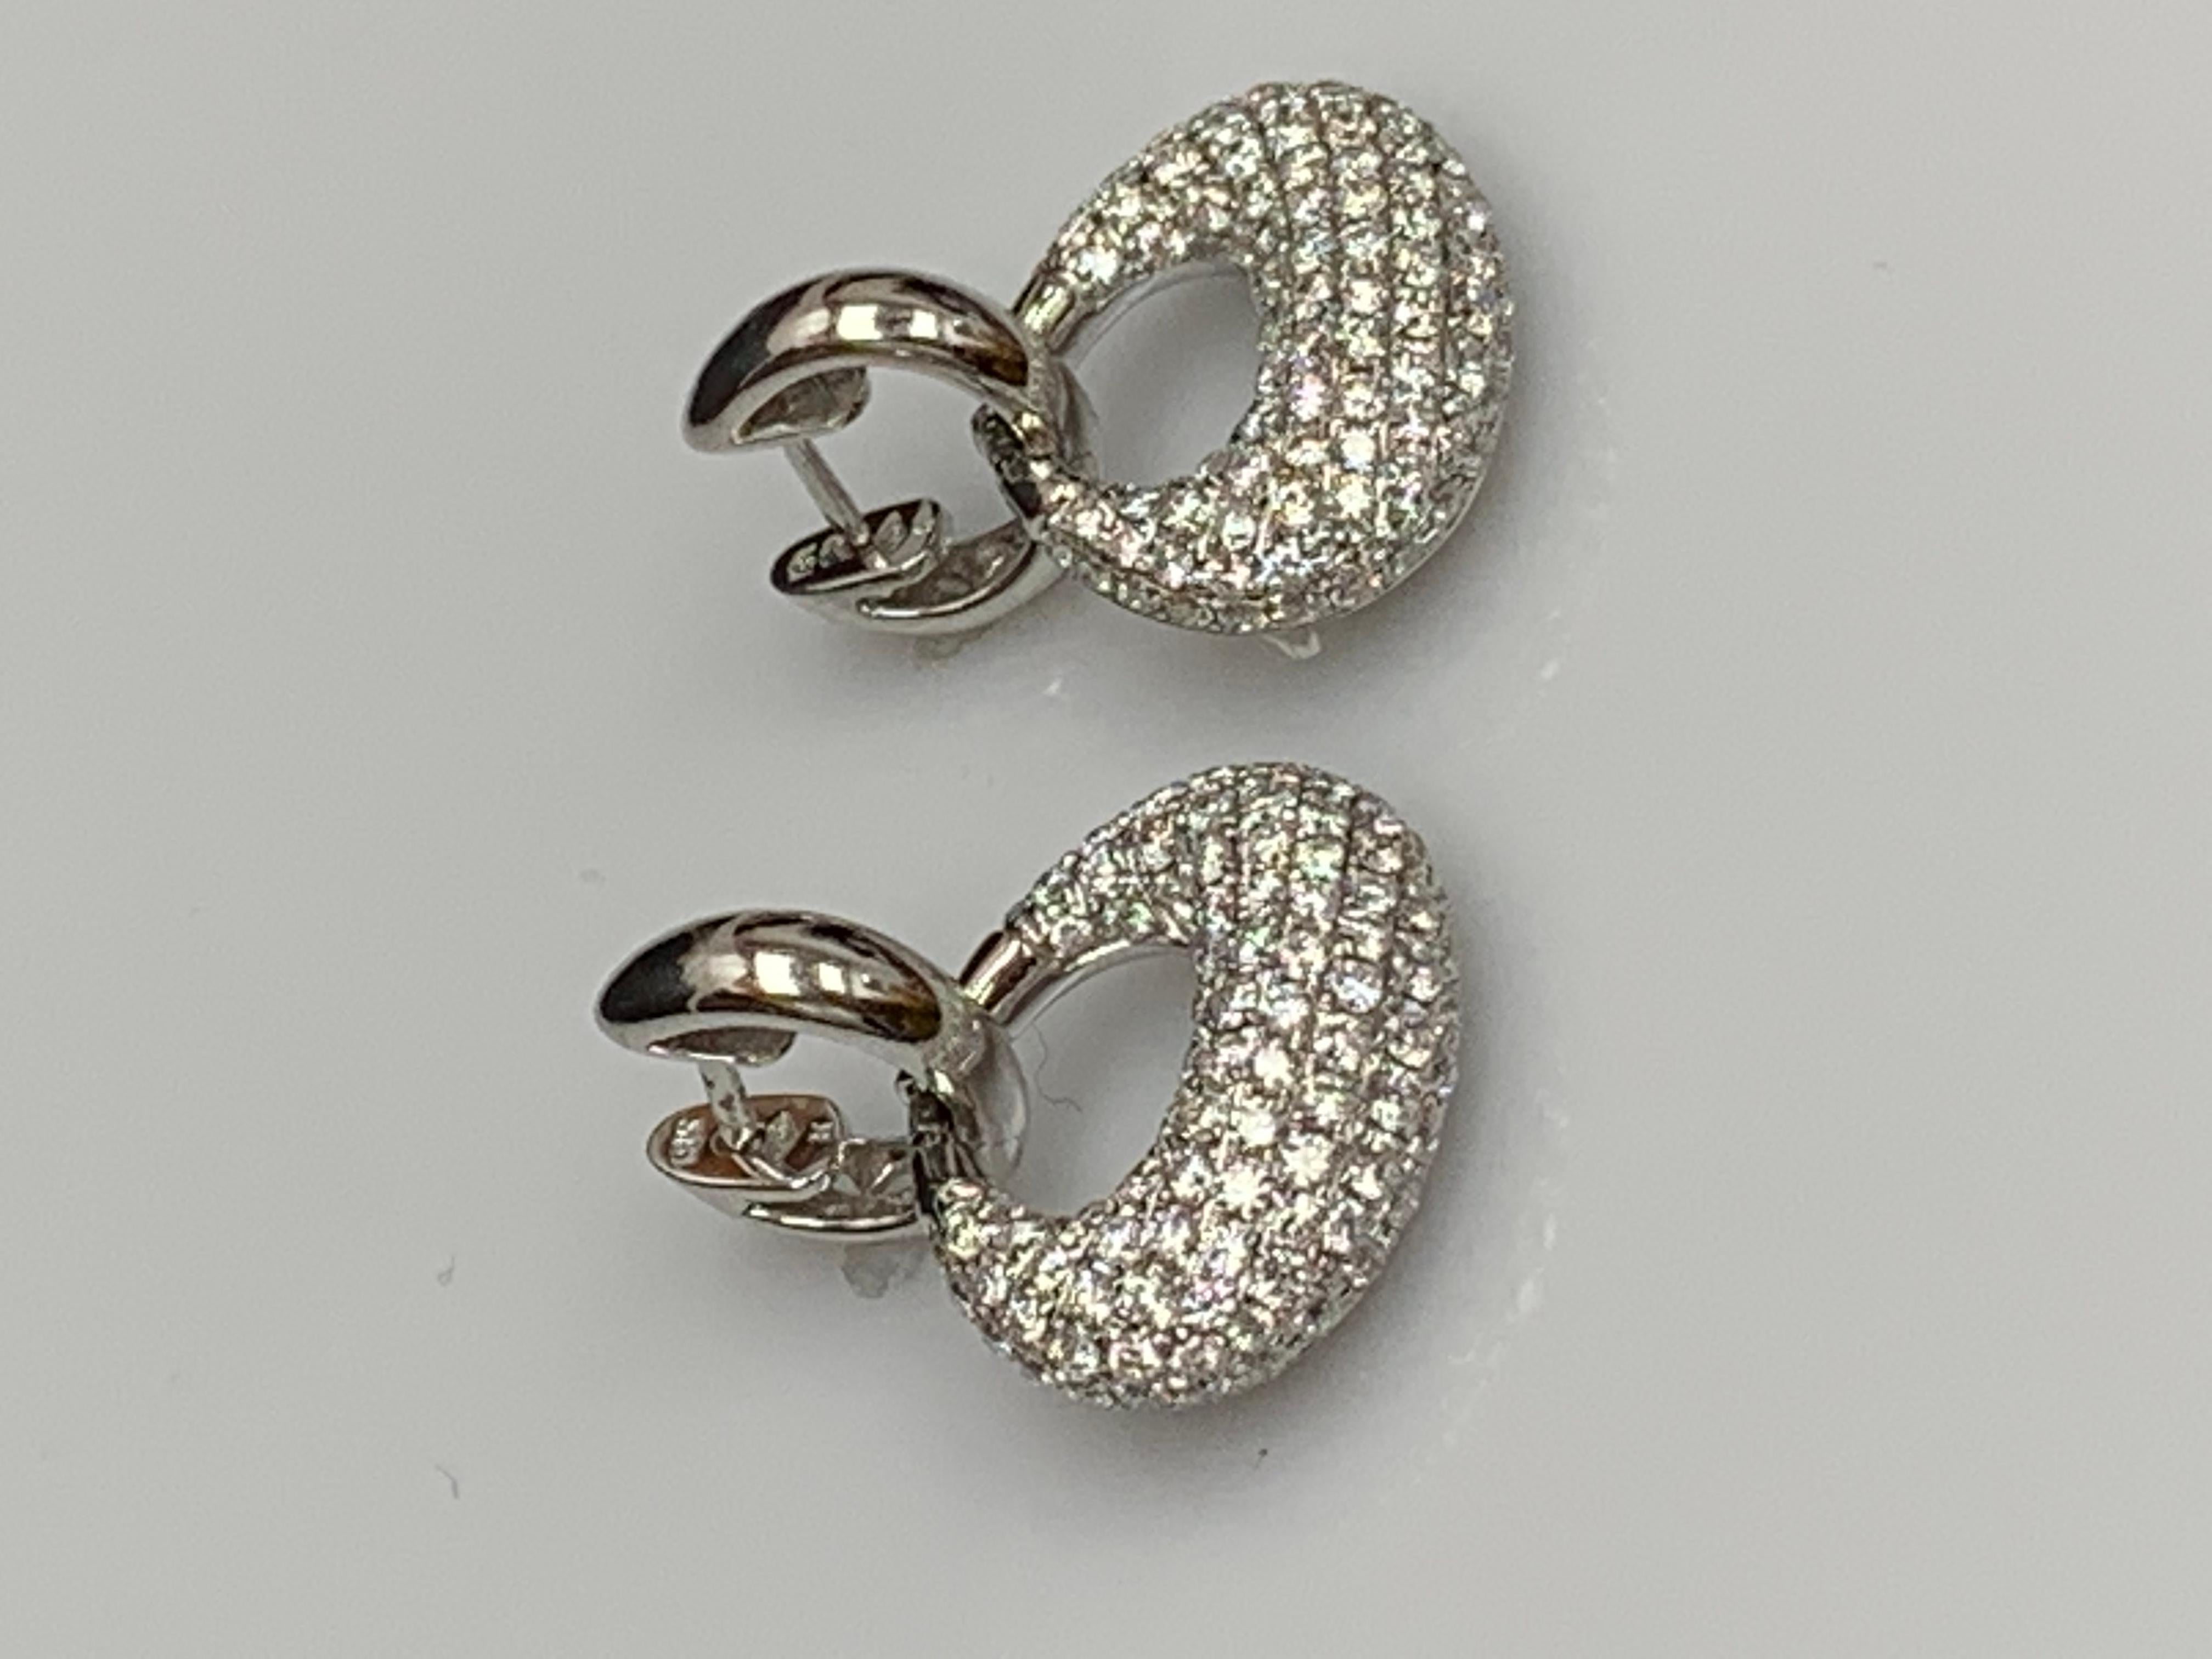 2.49 Carat Brilliant Cut Diamond Drop Earrings in 18K White Gold For Sale 1